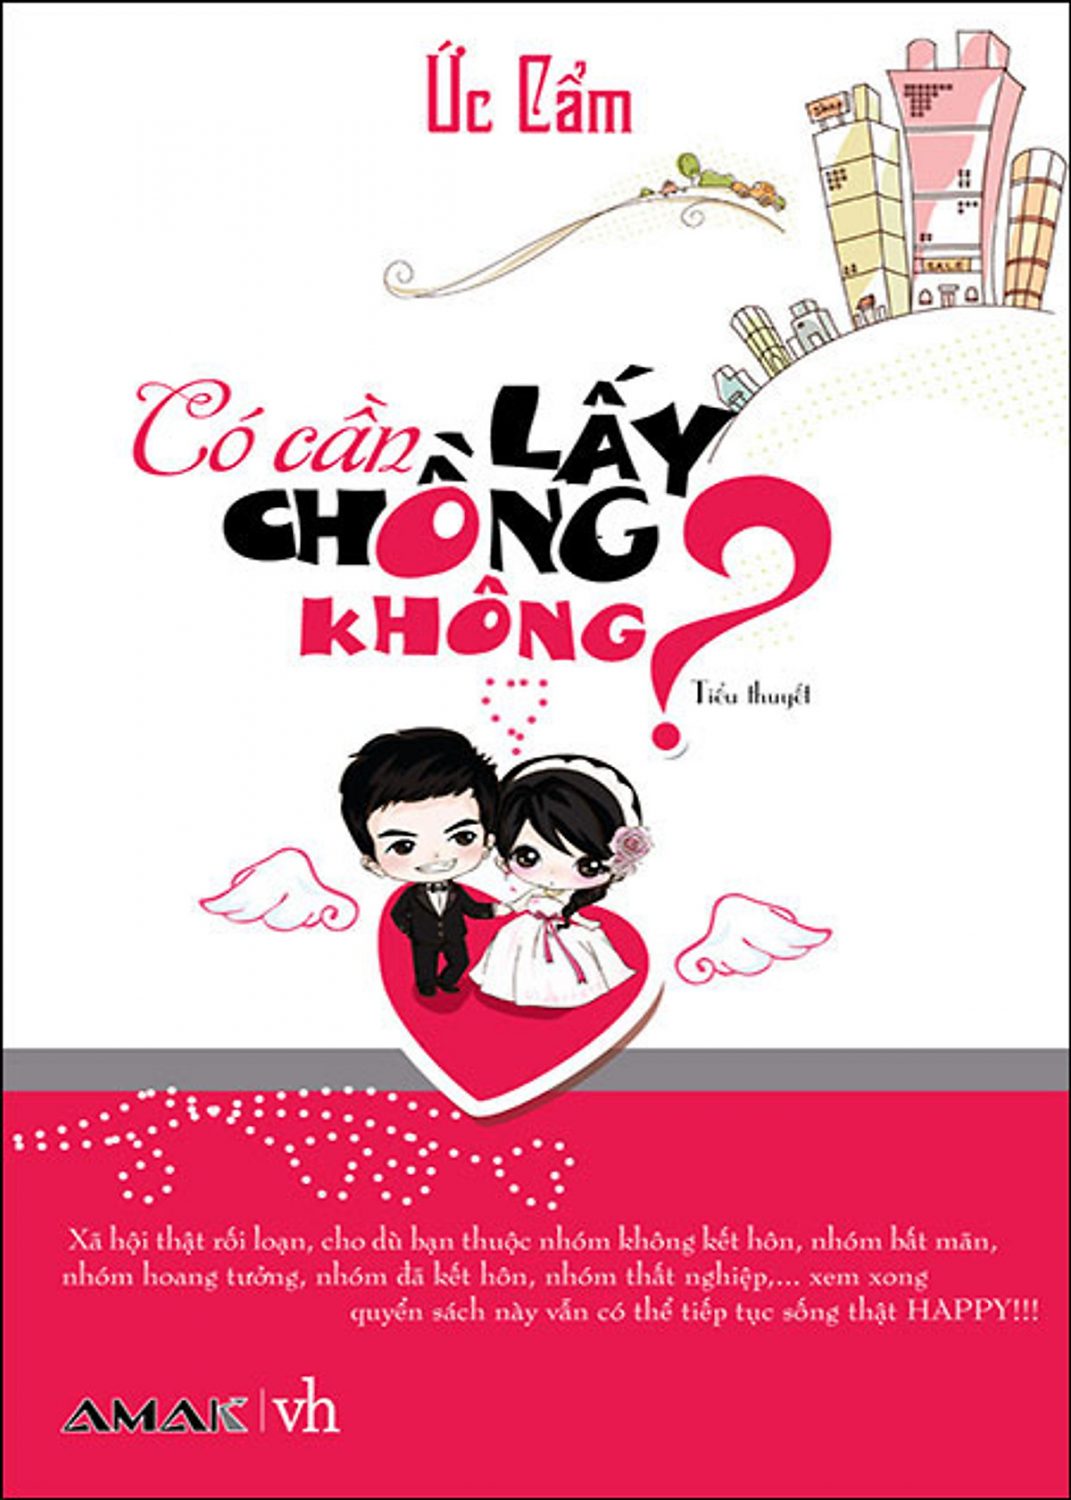 Co Can Lay Chong Khong 1 Scaled